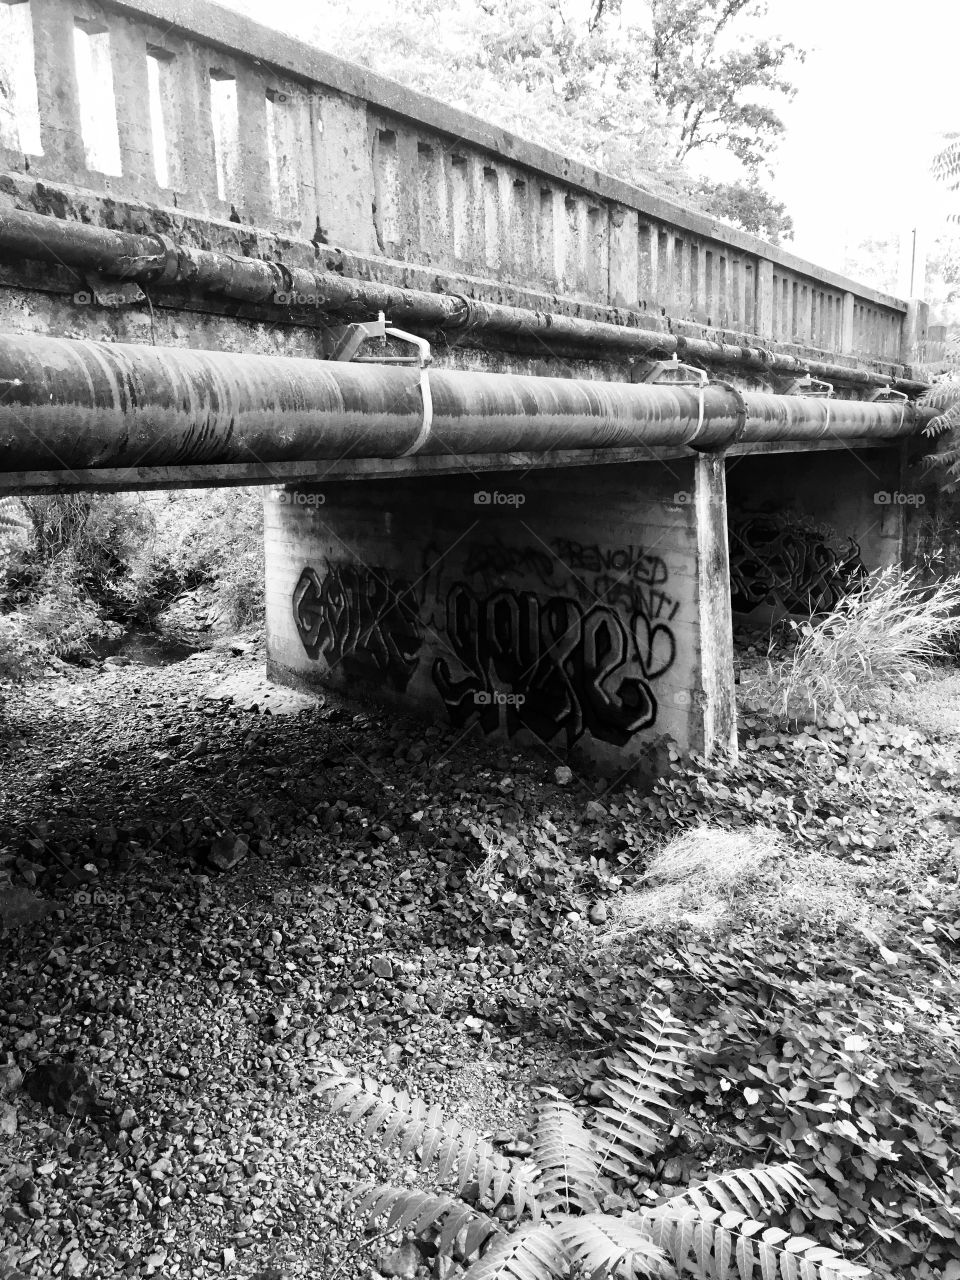 Graffiti under the bridge in black and white 